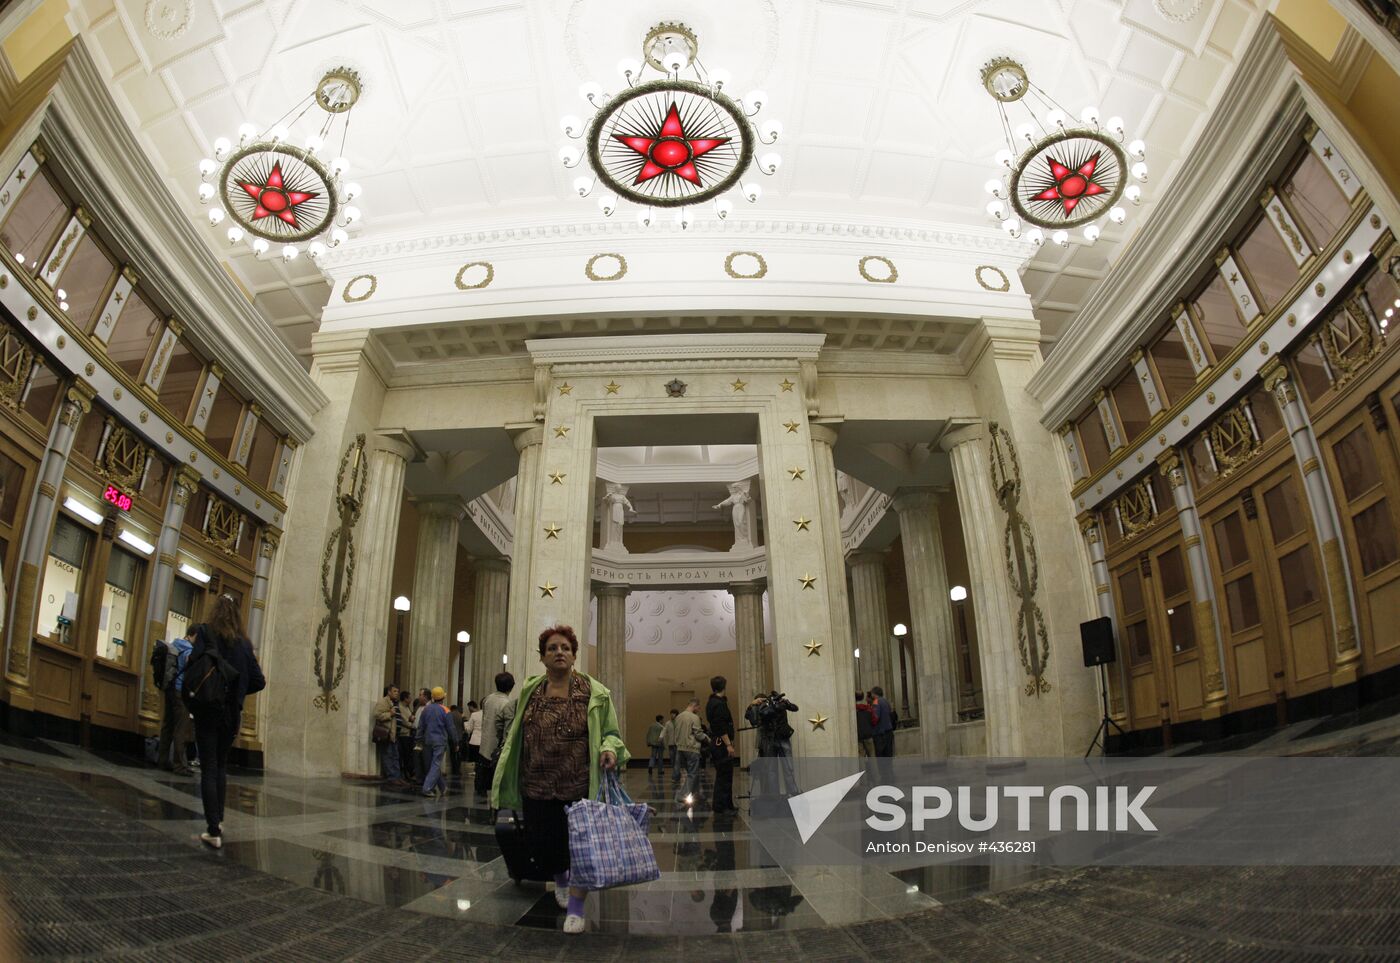 Kurskaya-Koltsevaya subway station lobby re-opened